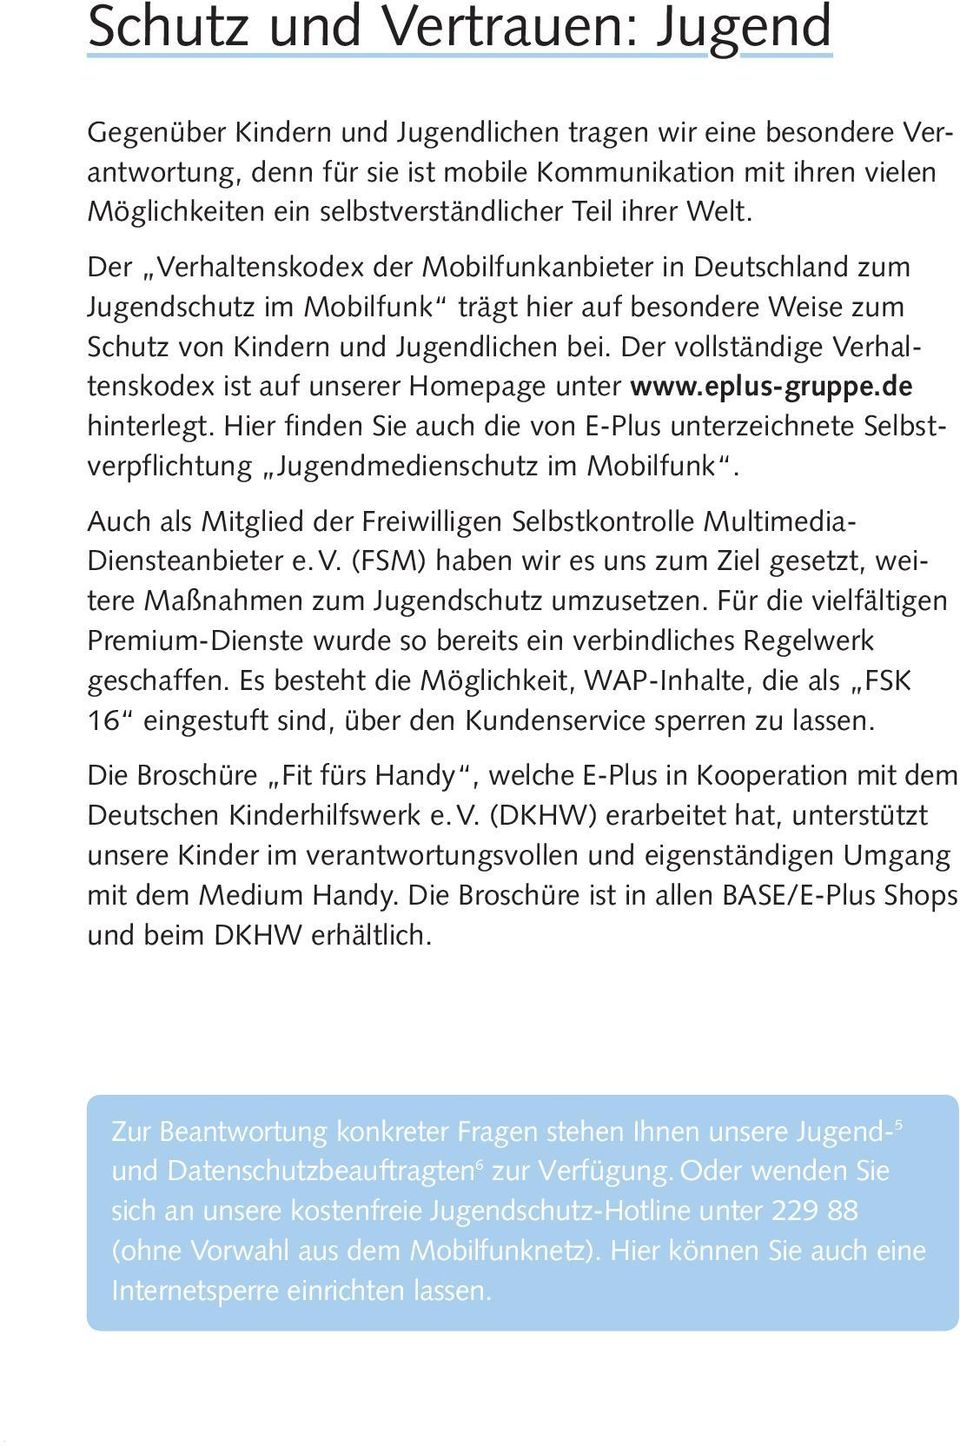 Der vollständige Verhaltenskodex ist auf unserer Homepage unter www.eplus-gruppe.de hinterlegt. Hier finden Sie auch die von E-Plus unterzeichnete Selbstverpflichtung Jugendmedienschutz im Mobilfunk.